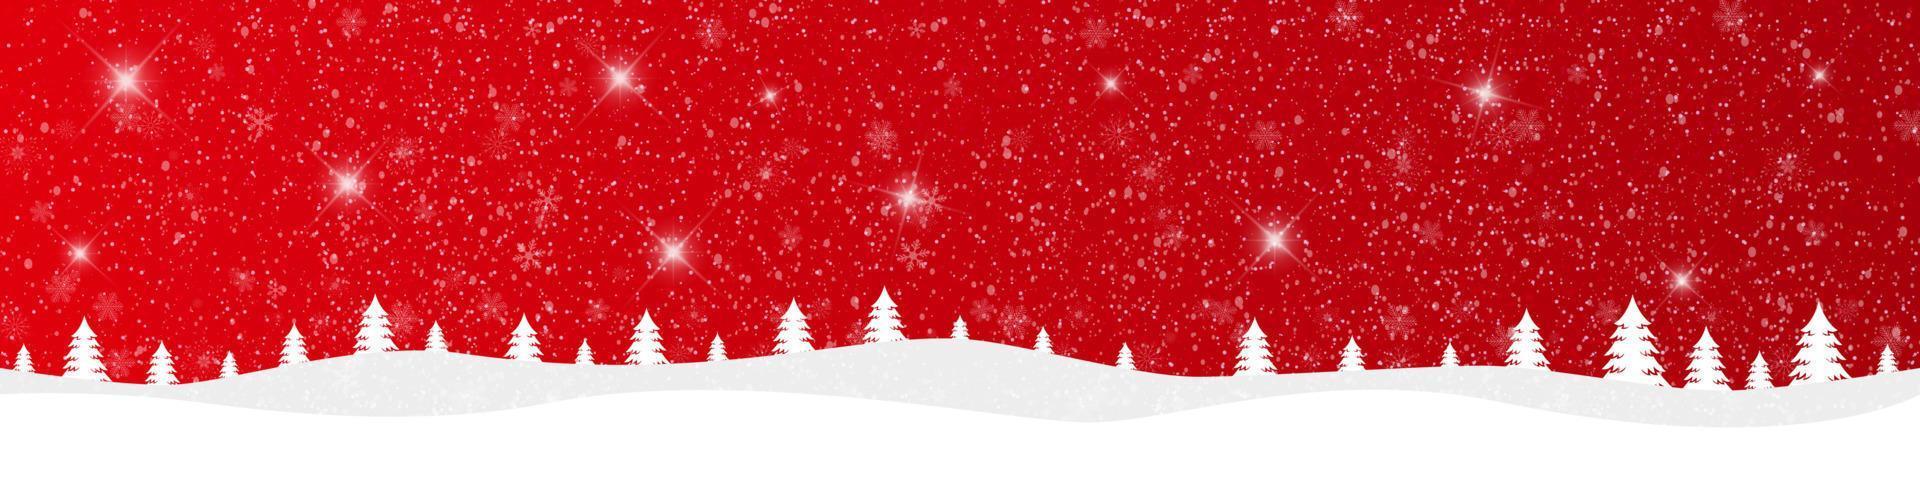 buon natale e felice anno nuovo su sfondo rosso con paesaggio innevato. illustrazione vettoriale. vettore